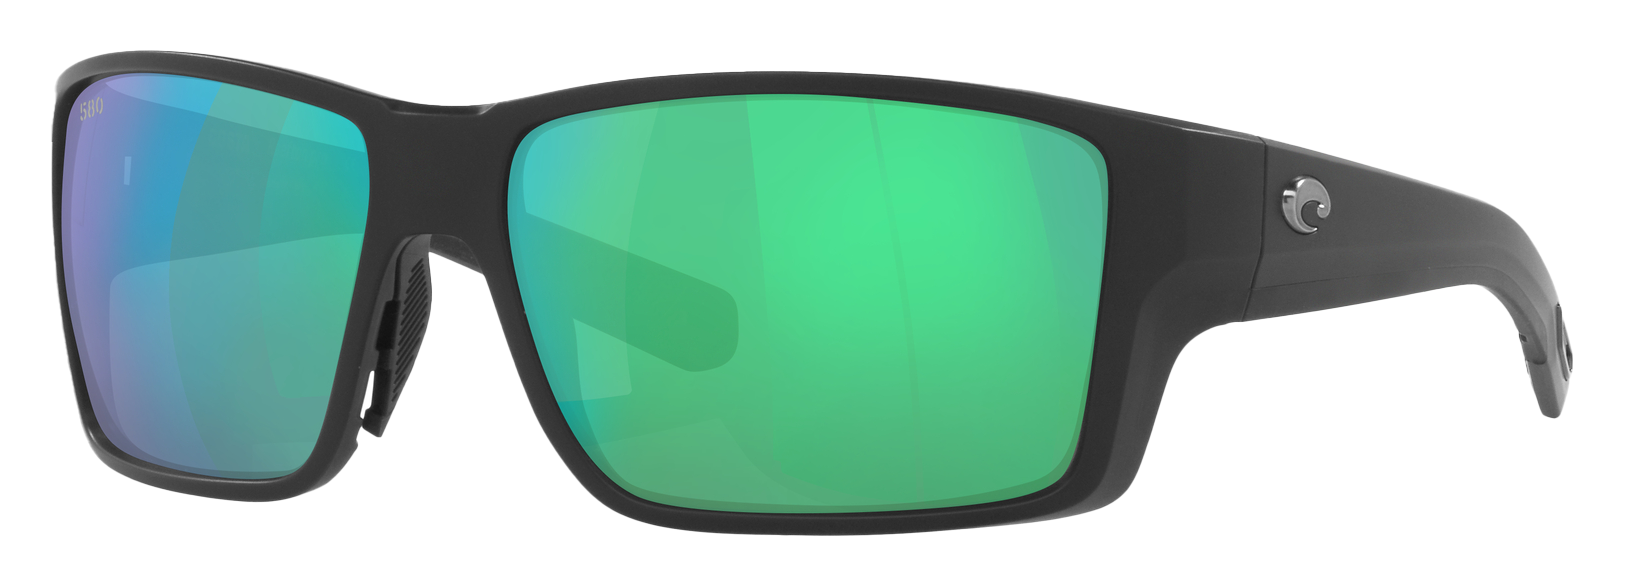 Costa Del Mar Reefton PRO 580G Glass Polarized Sunglasses